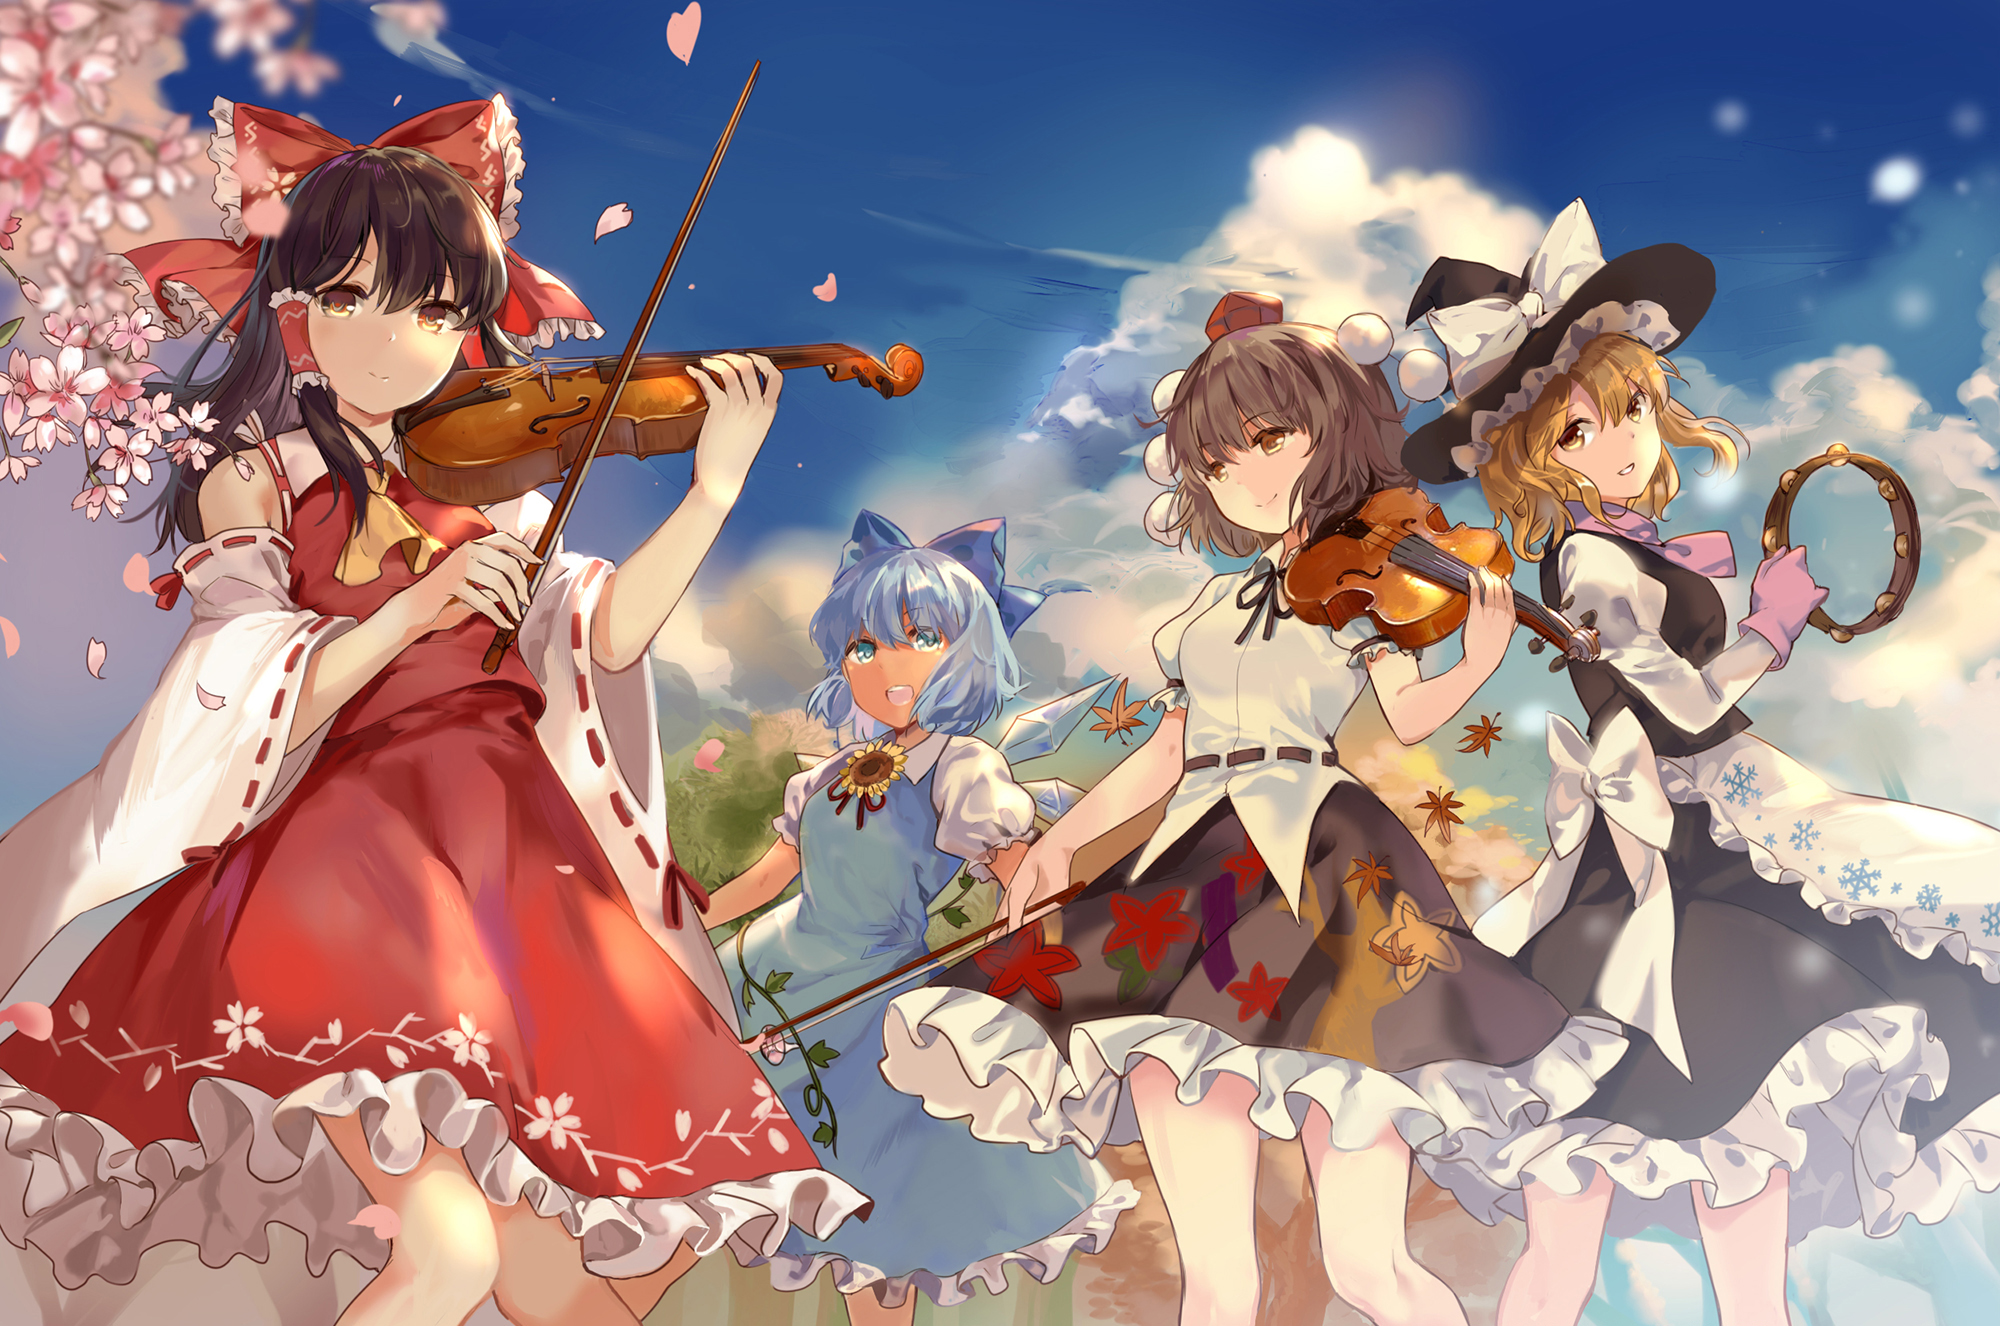 Descarga gratuita de fondo de pantalla para móvil de Animado, Touhou, Aya Shameimaru, Reimu Hakurei, Marisa Kirisame, Cirno (Touhou).